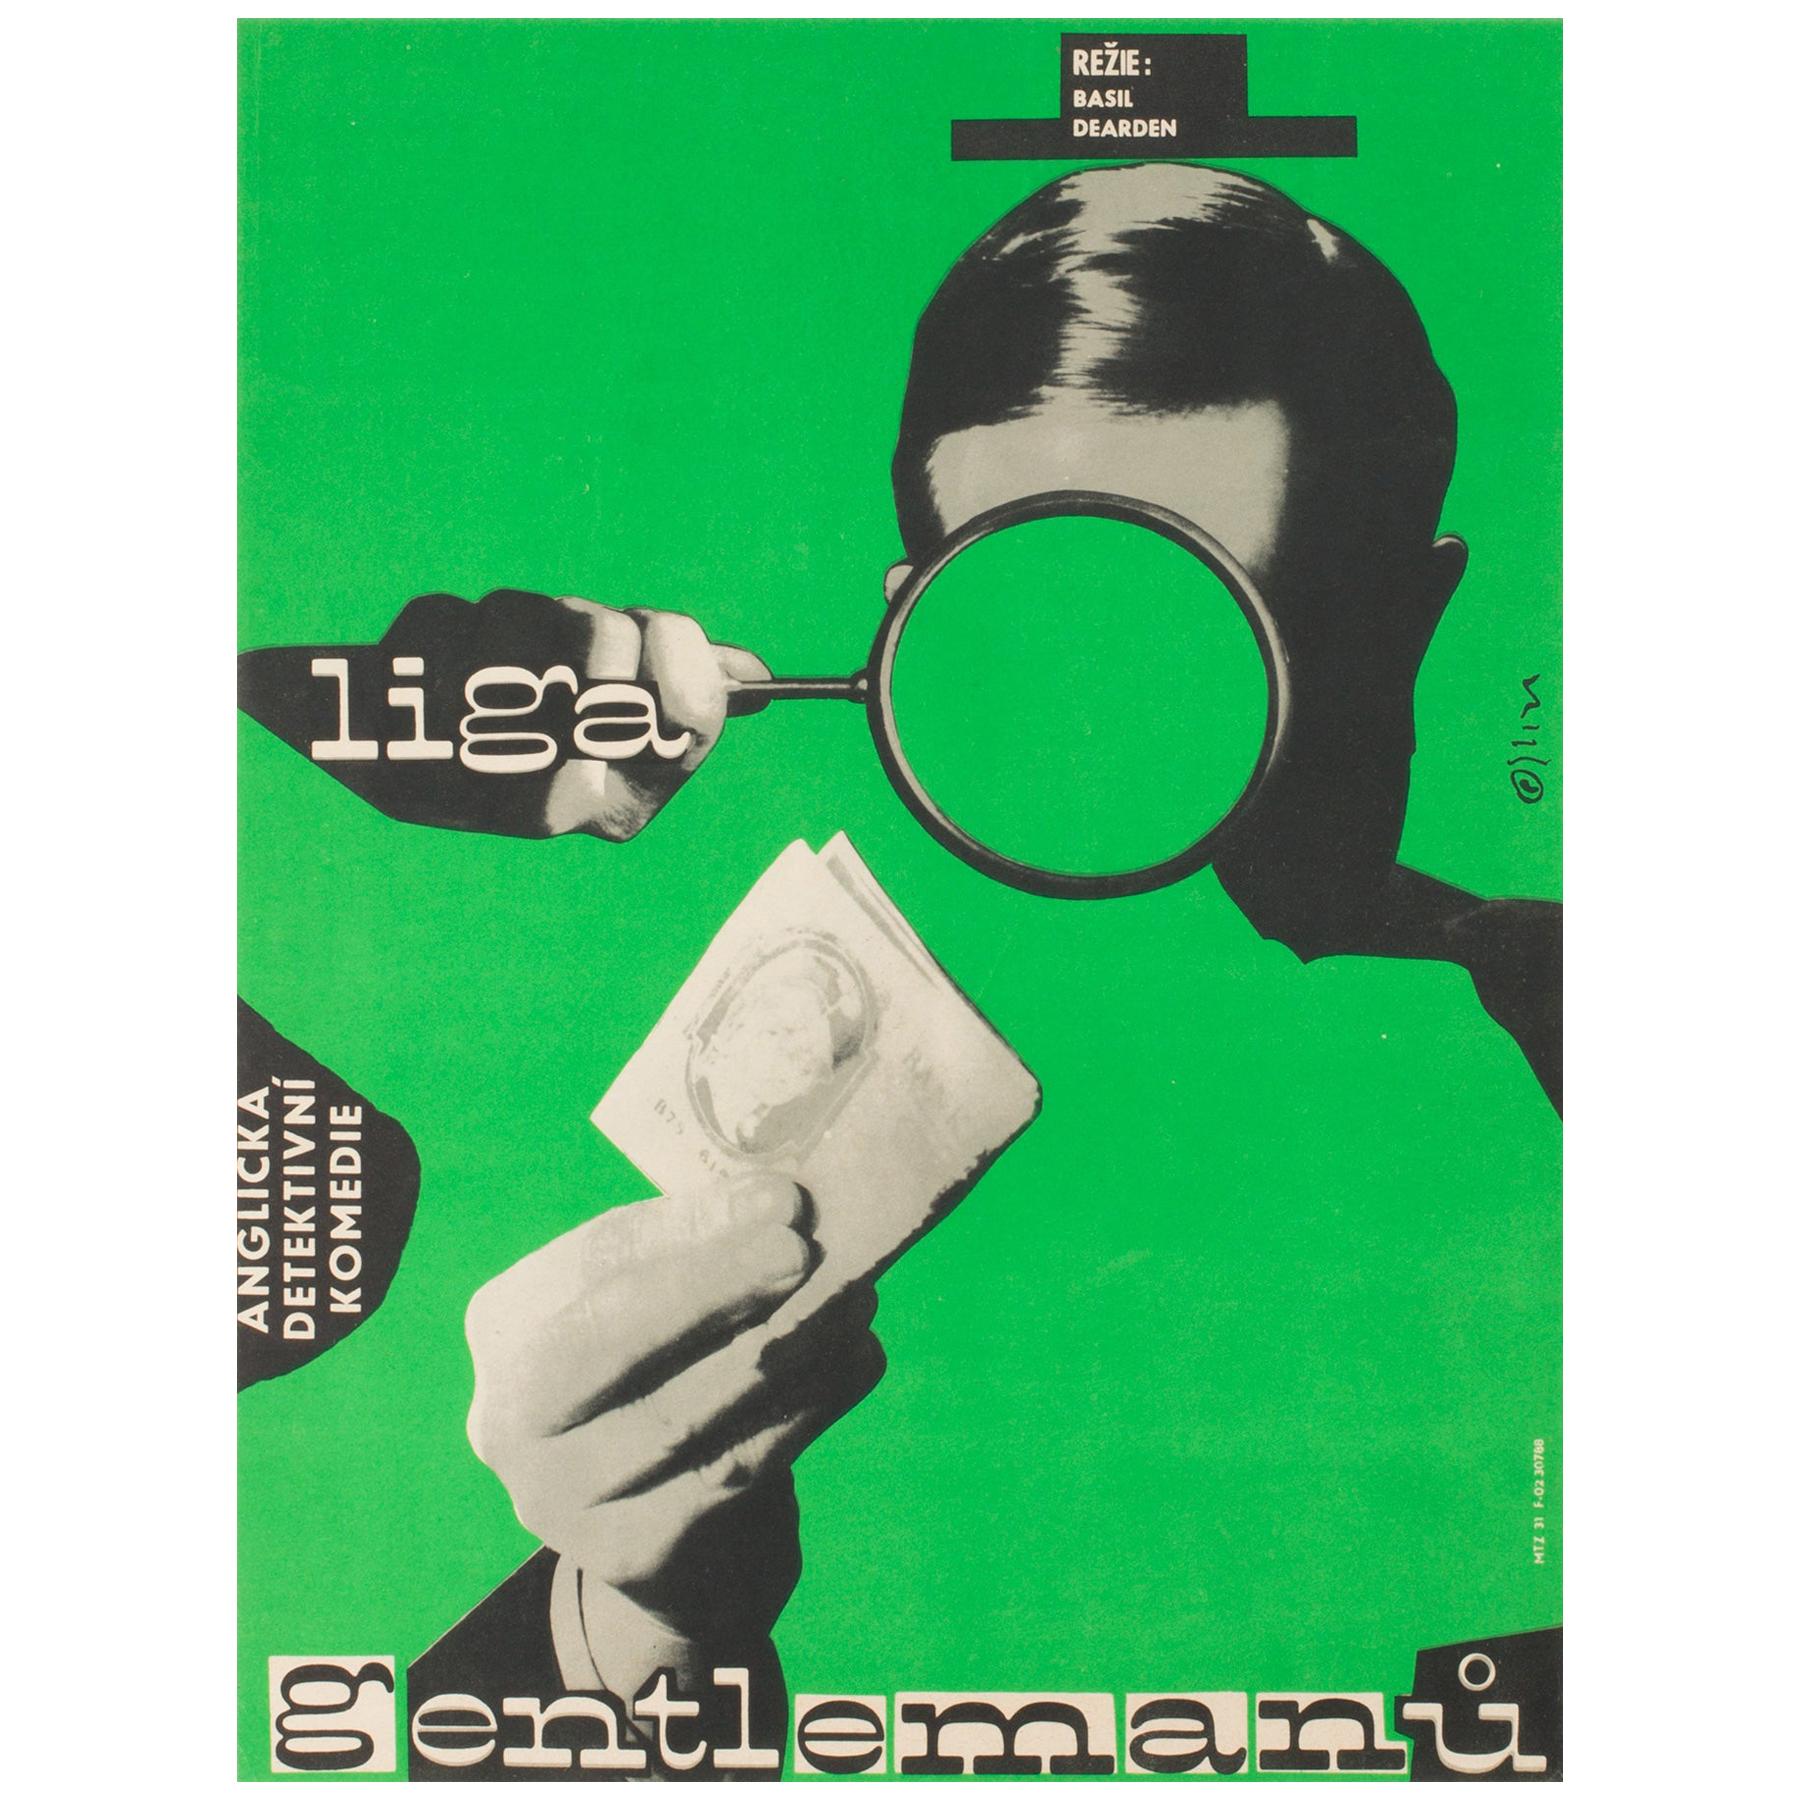 League of Gentlemen Original Czech Film Poster Milan Grygar, 1964 For Sale